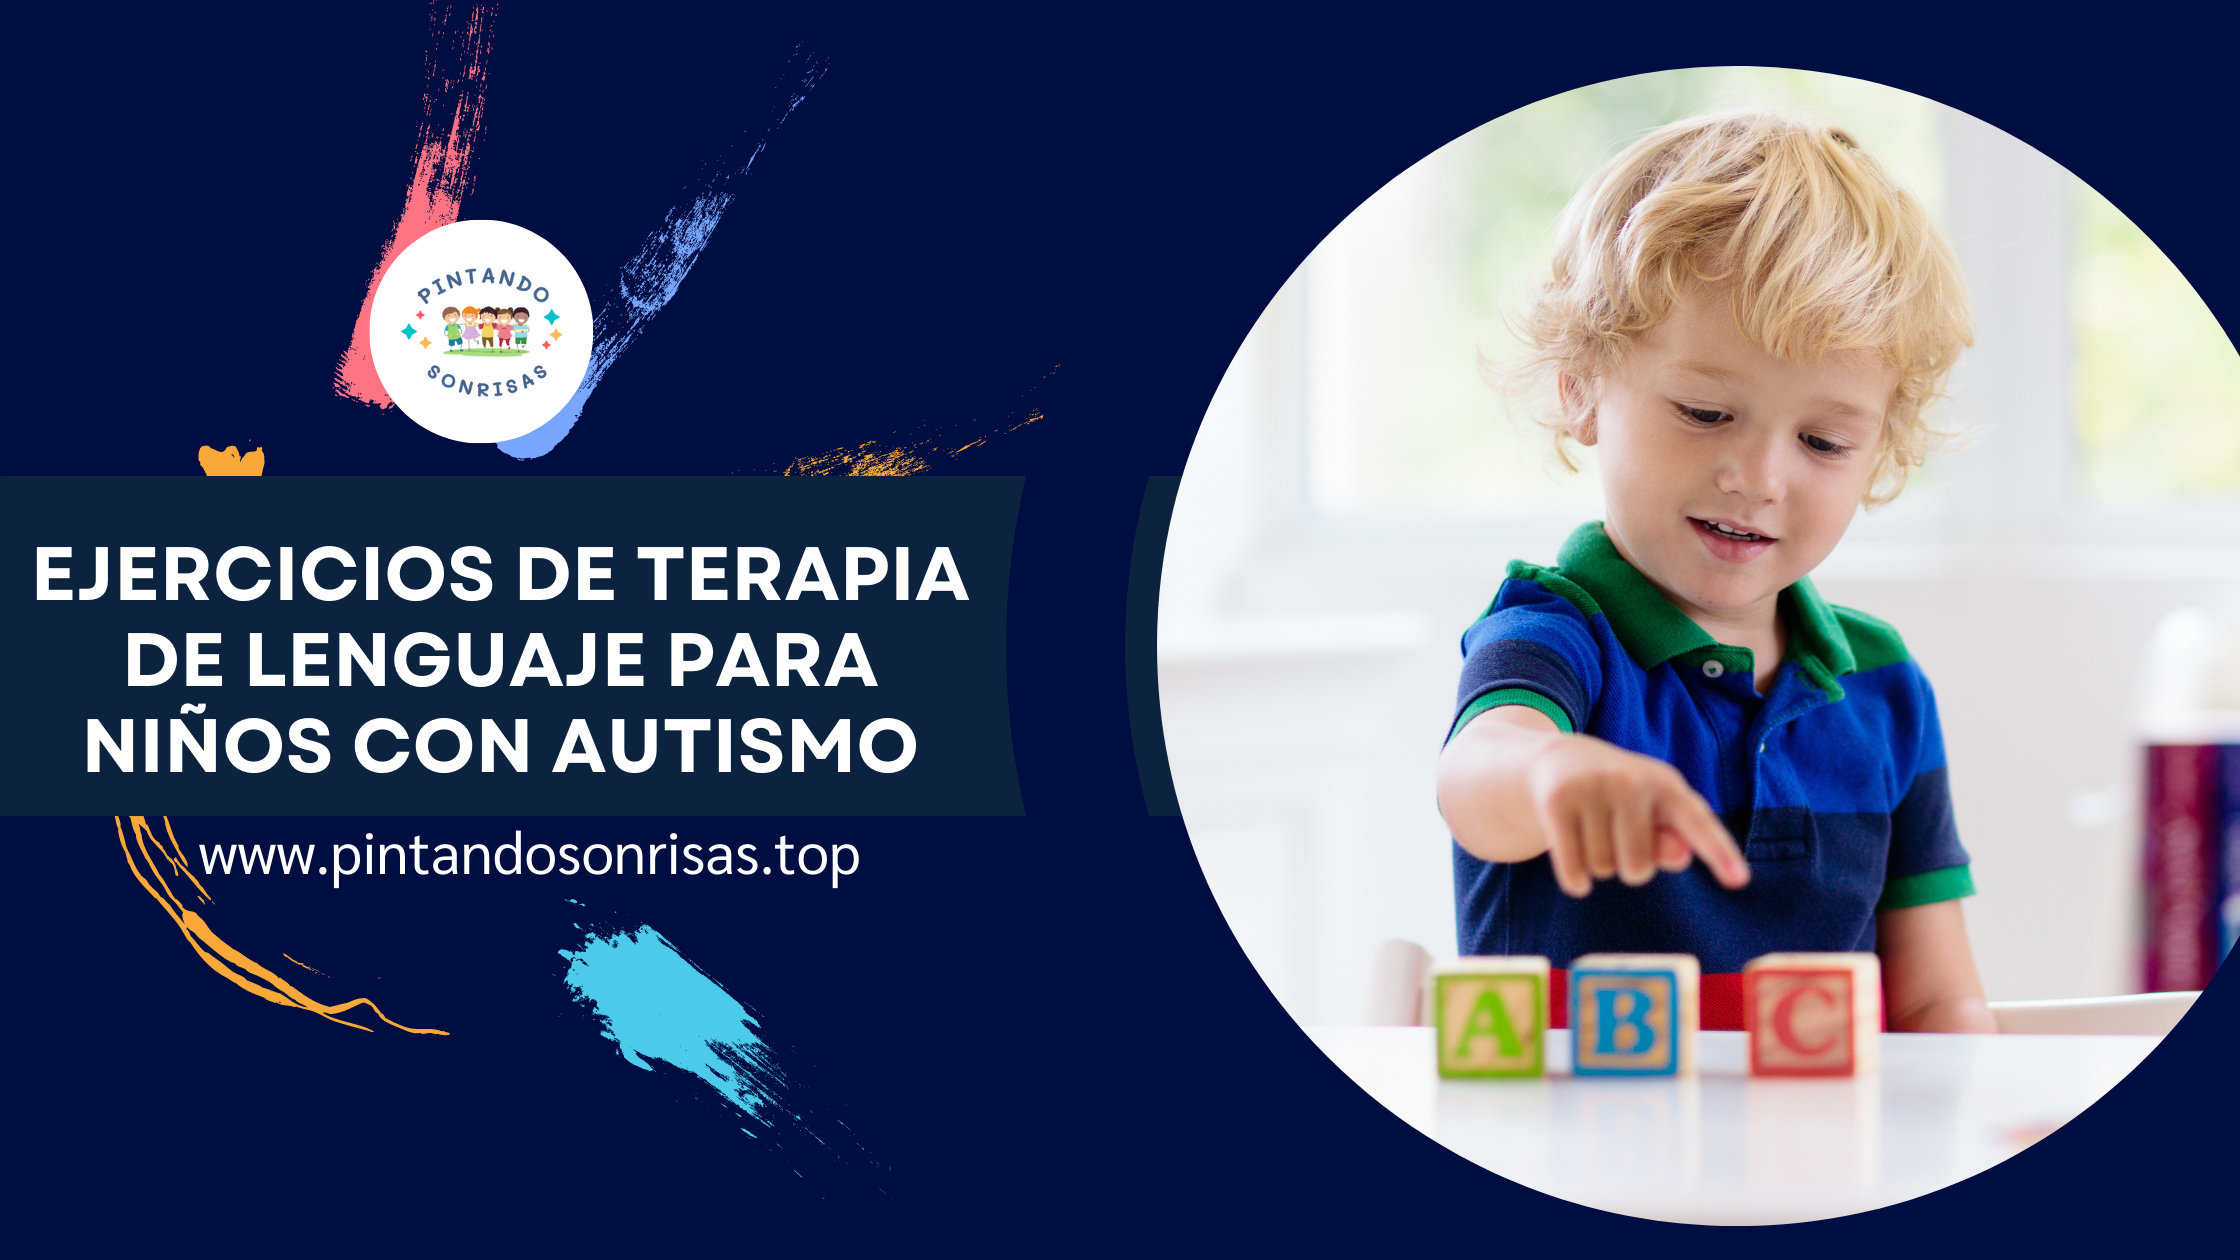 Ejercicios de terapia de lenguaje para niños con autismo